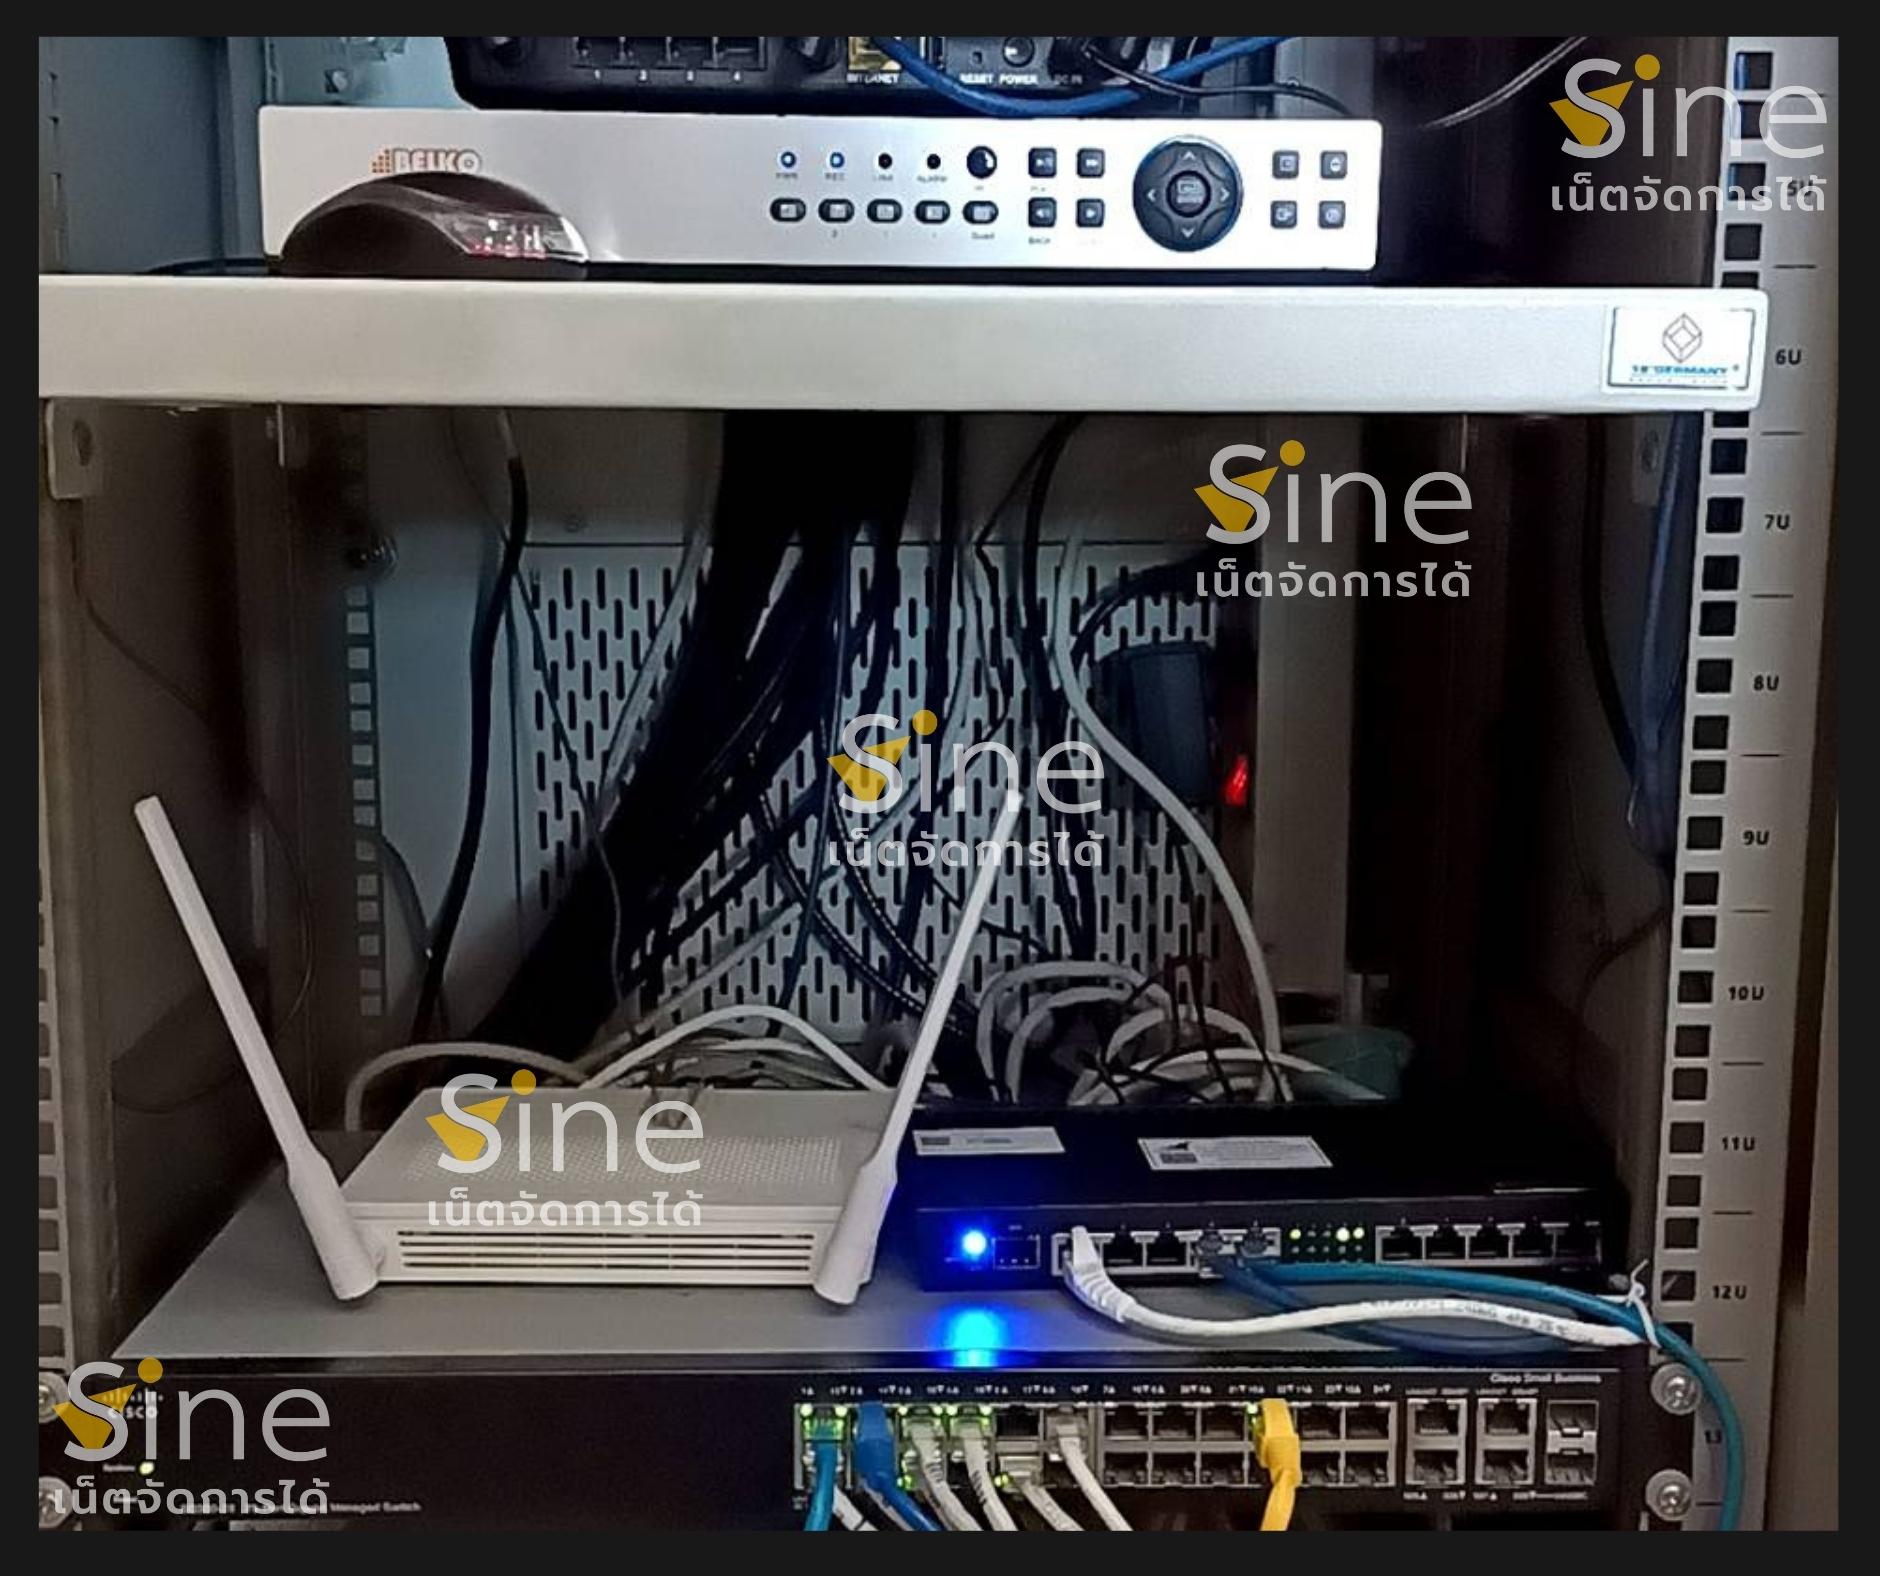 การติดตั้ง Sine WAN เชื่อมโยงสาขา เครือข่ายสาขา WAN VPN Network Internet เน็ตระหว่างสาขา